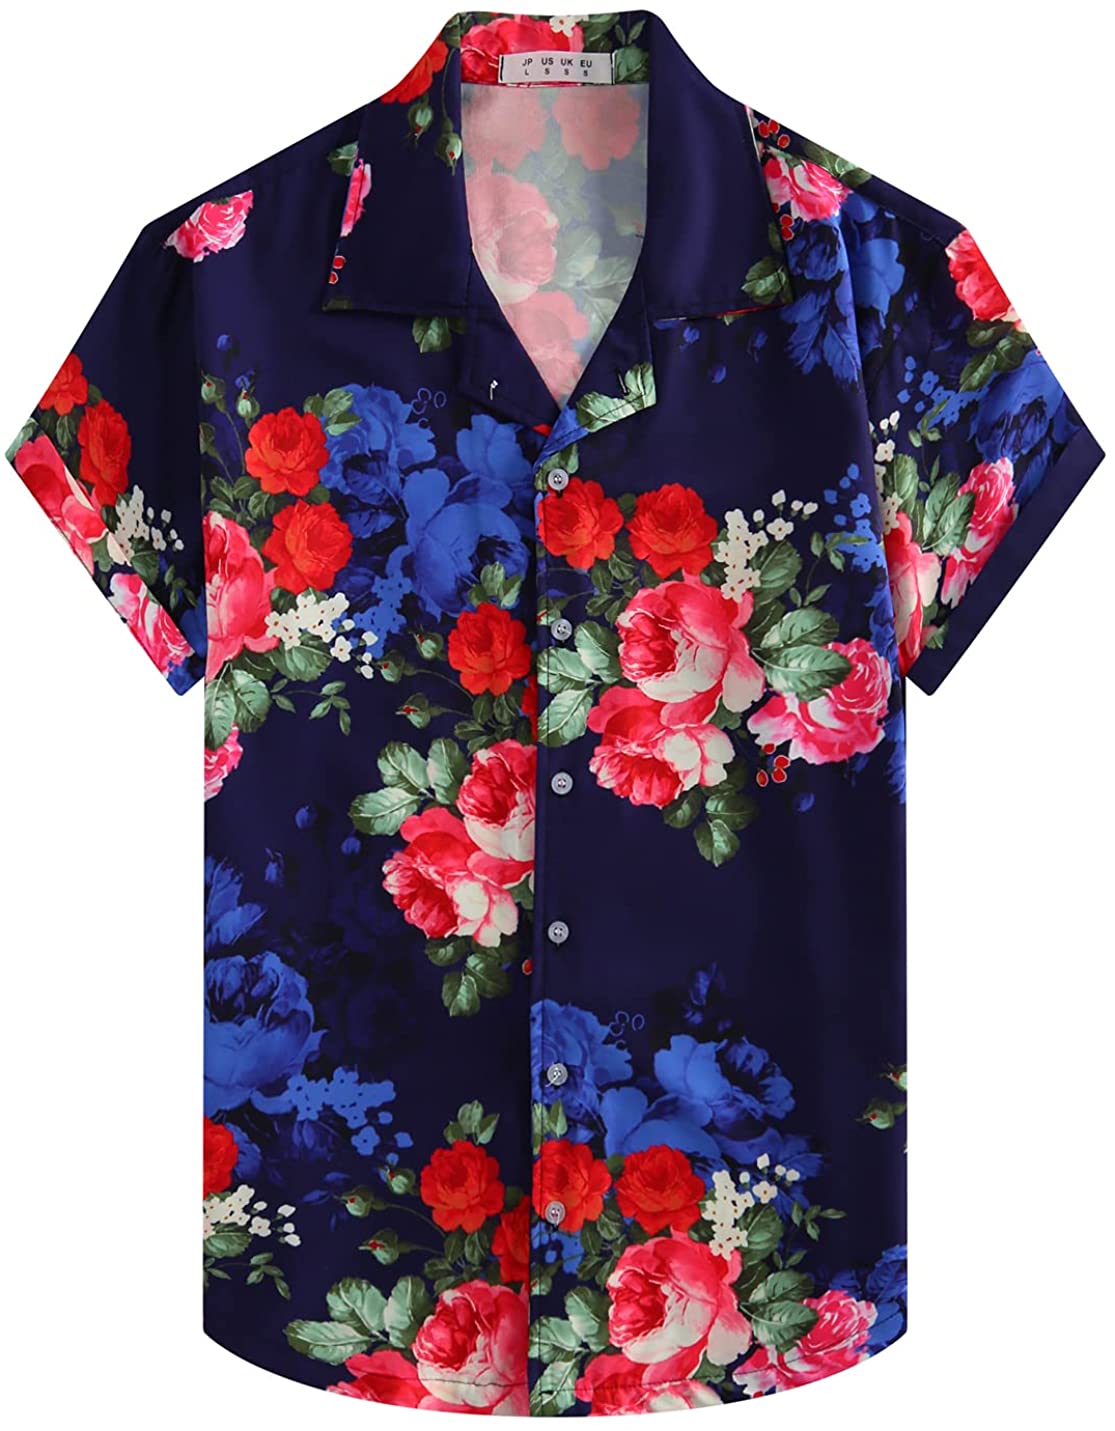 ZHPUAT Men's Funky Hawaiian Shirt Short Sleeve Button Down Tropical Print  Shirts